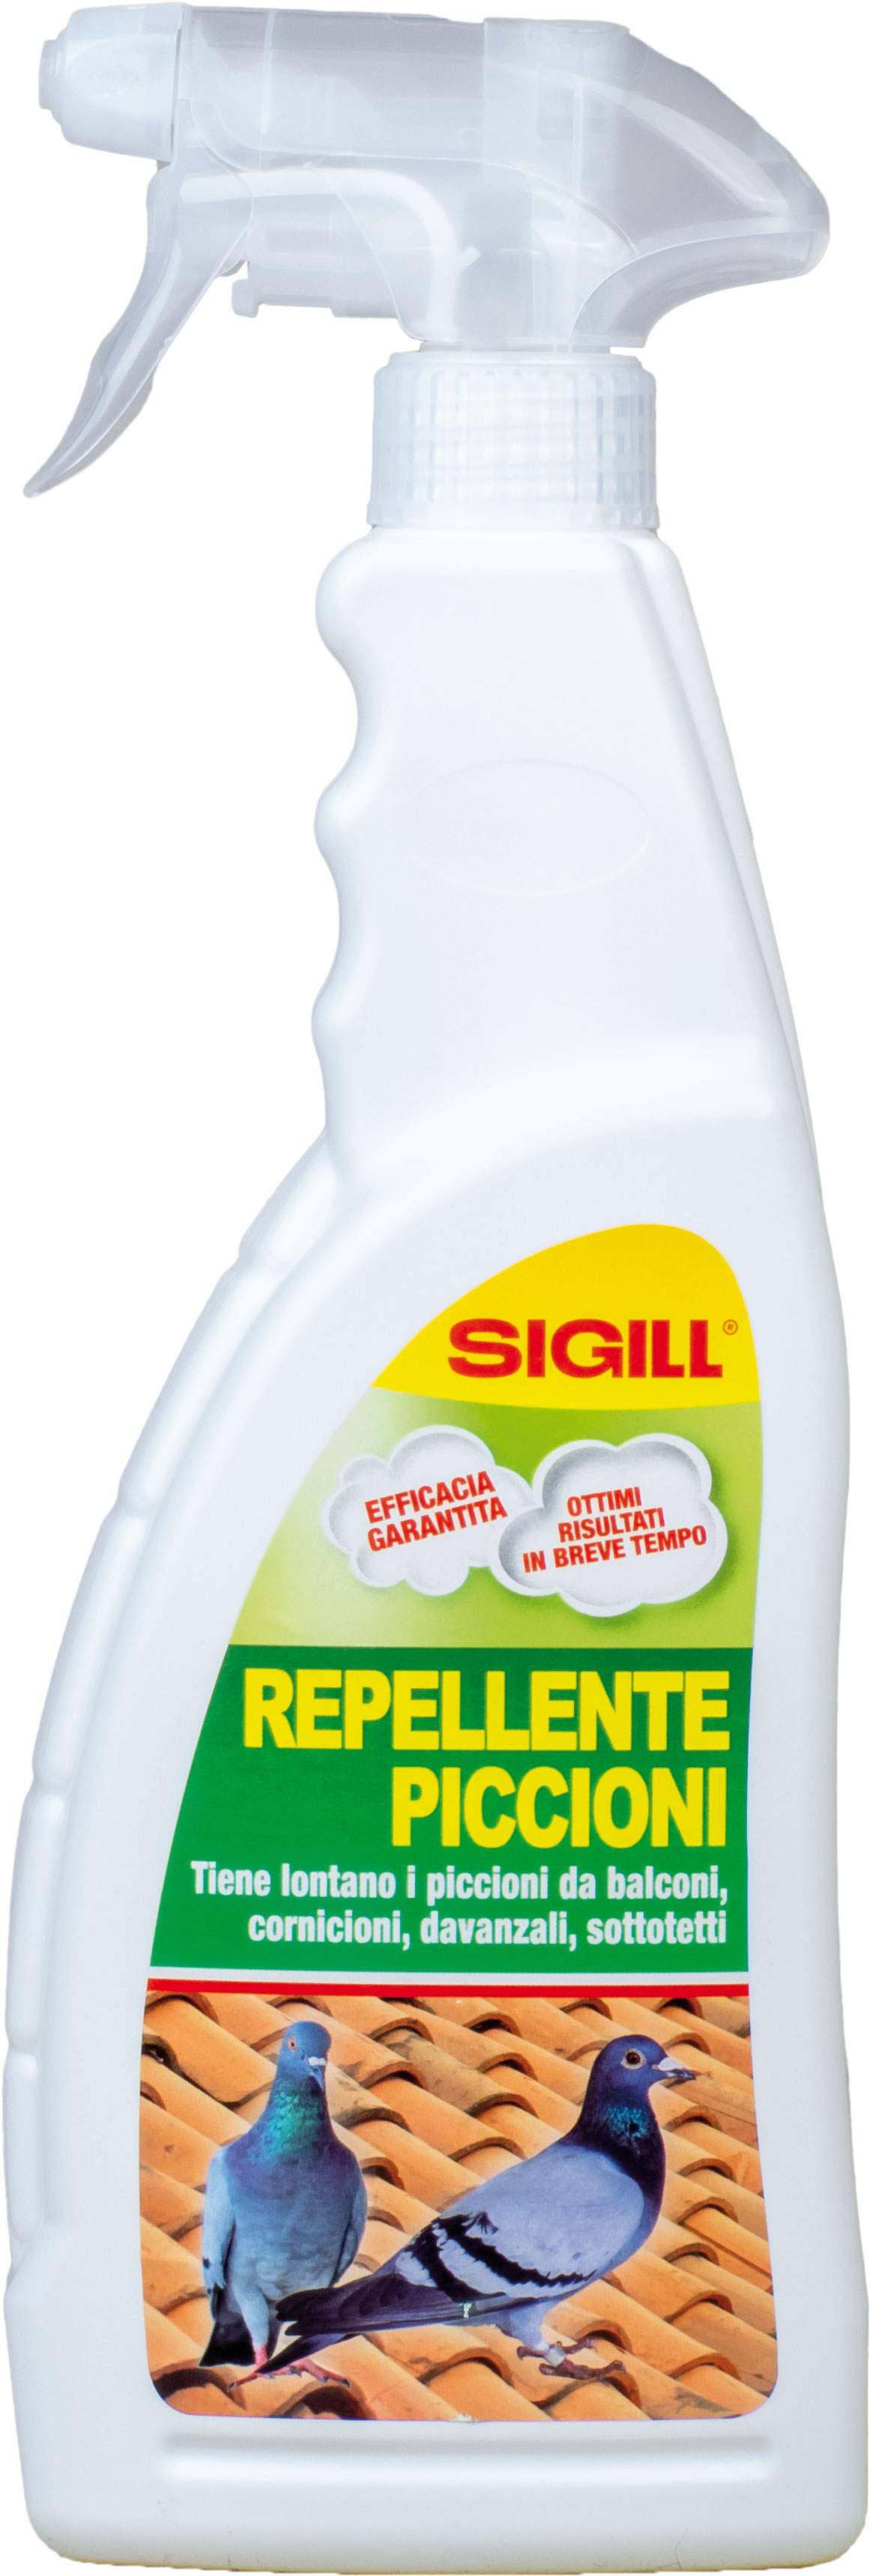 Repellente Piccioni - Sigill